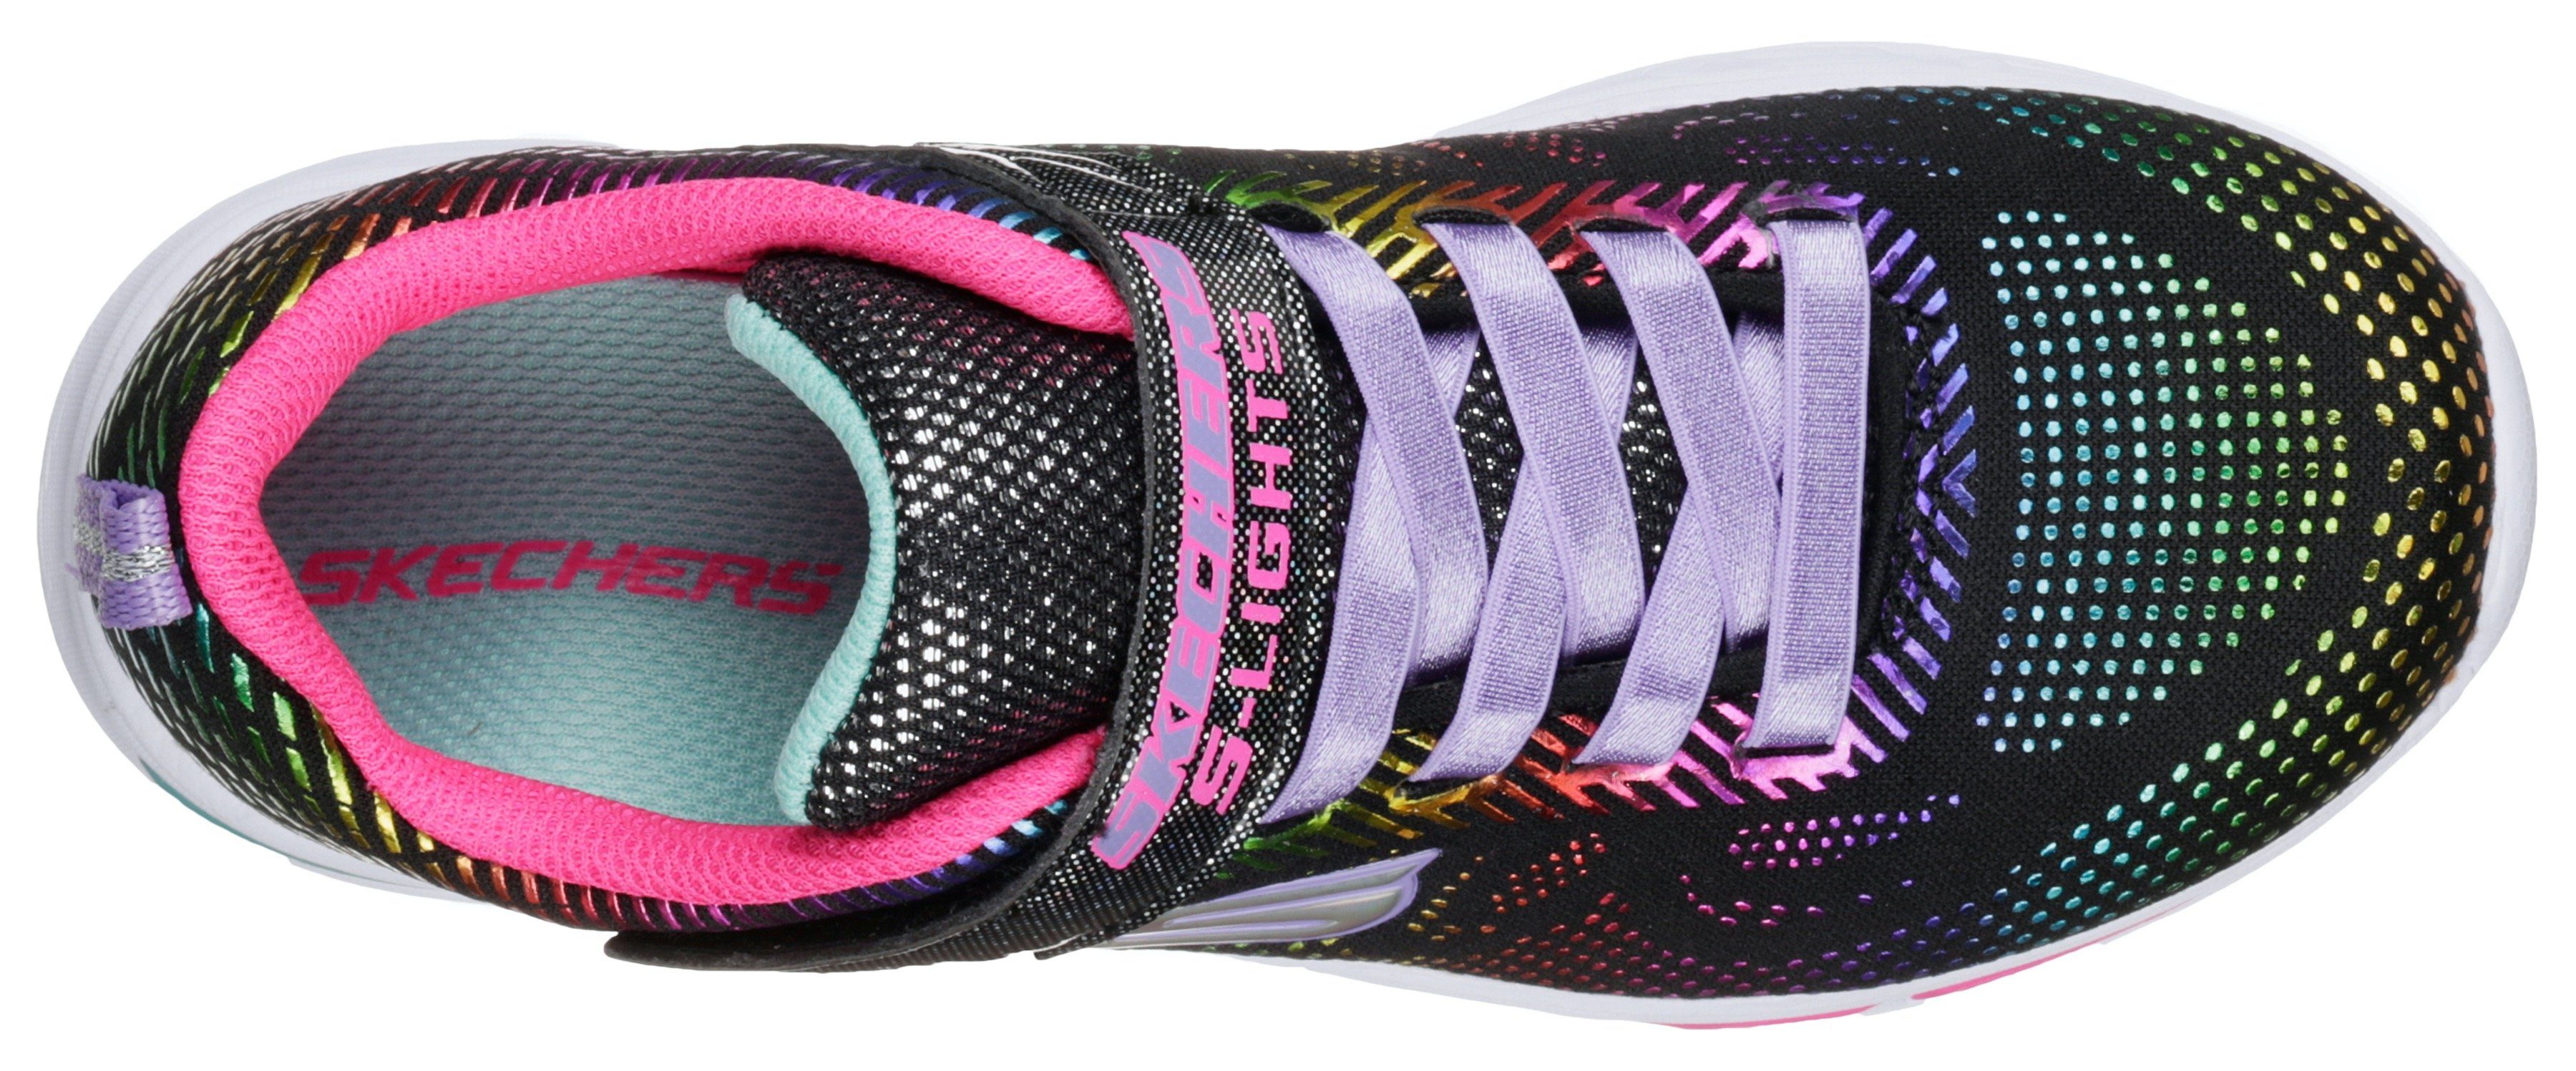 Skechers Kids Blinkschuh Sneaker Laufsohle mit blinkender LITEBEAMS-Gleam N`Dream schwarz-regenbogenfarben-glitzer